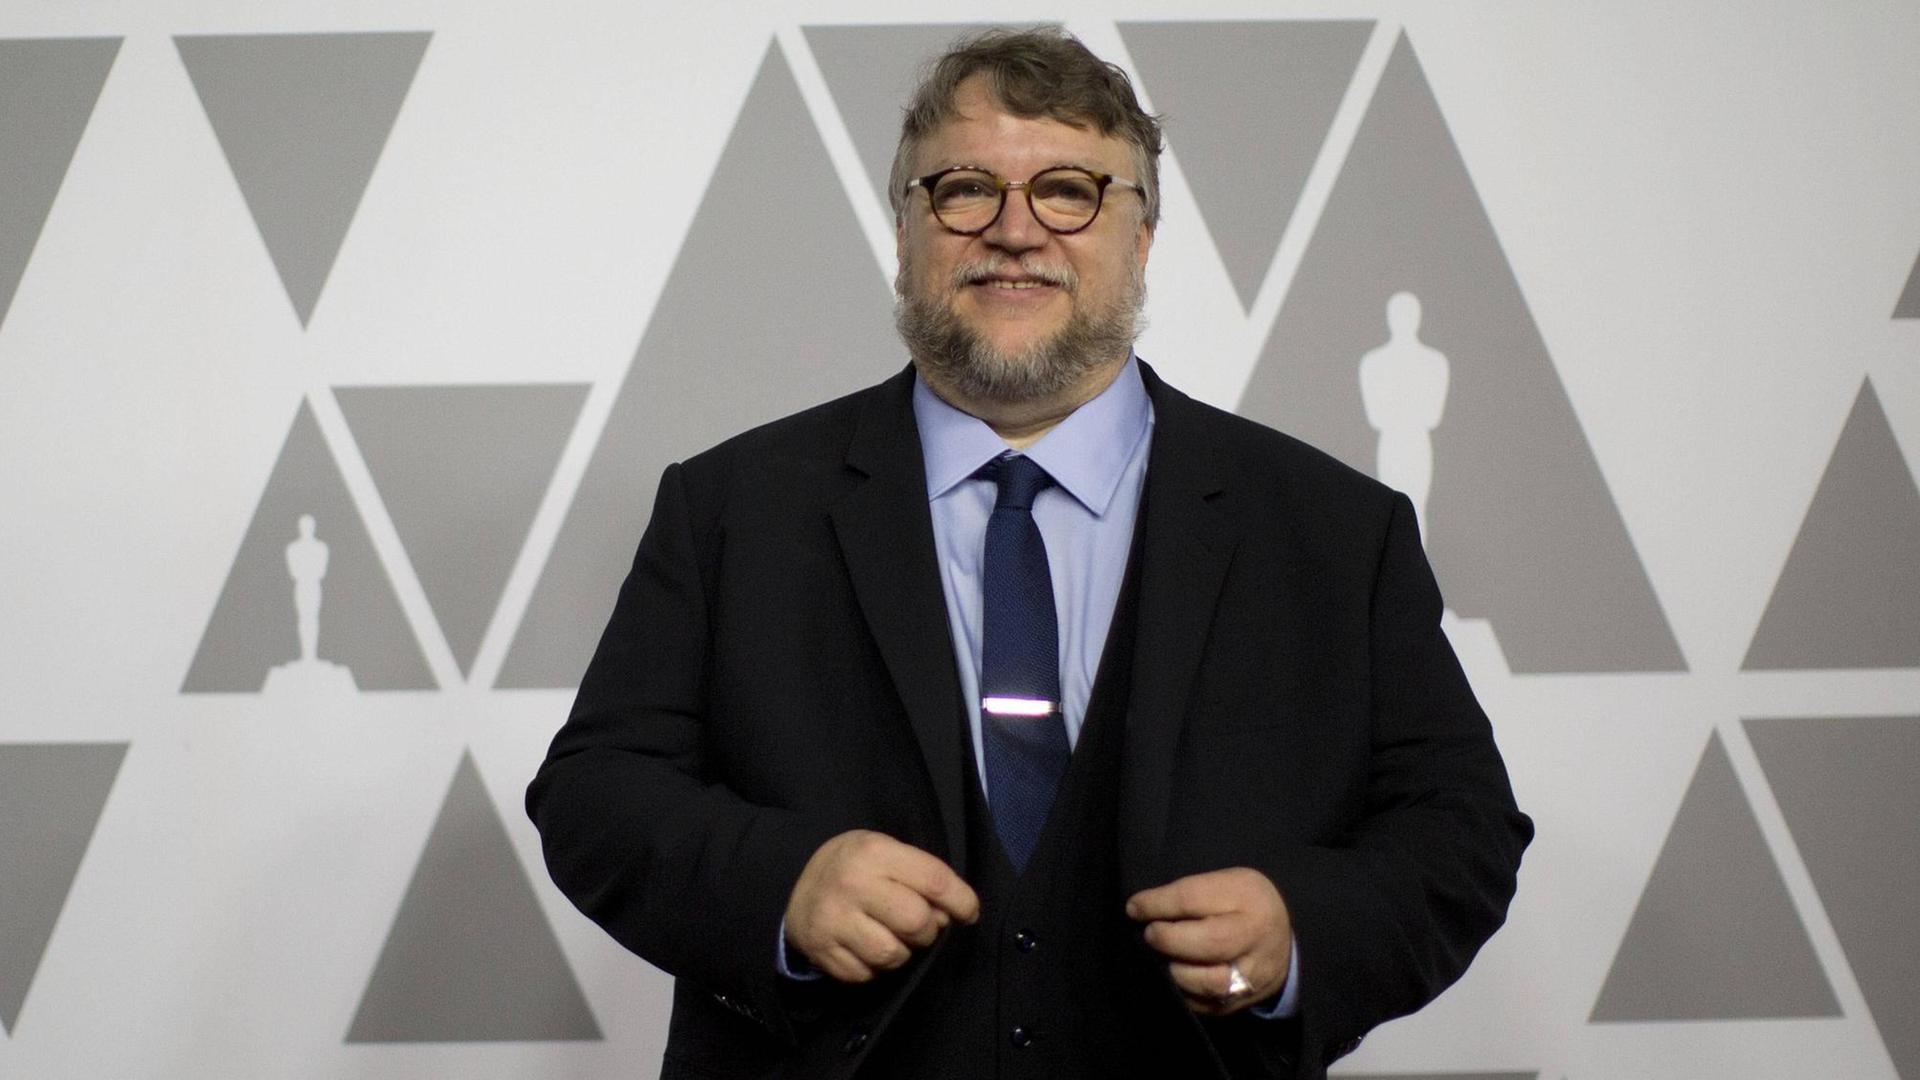 Der mexikanische Regisseur und Filmproduzent Guillermo del Toro Gómez ist mit seinem Film "The Shape of Water" für 13 Oscars nominiert, unter anderem für die Kategorie "Beste Regie".